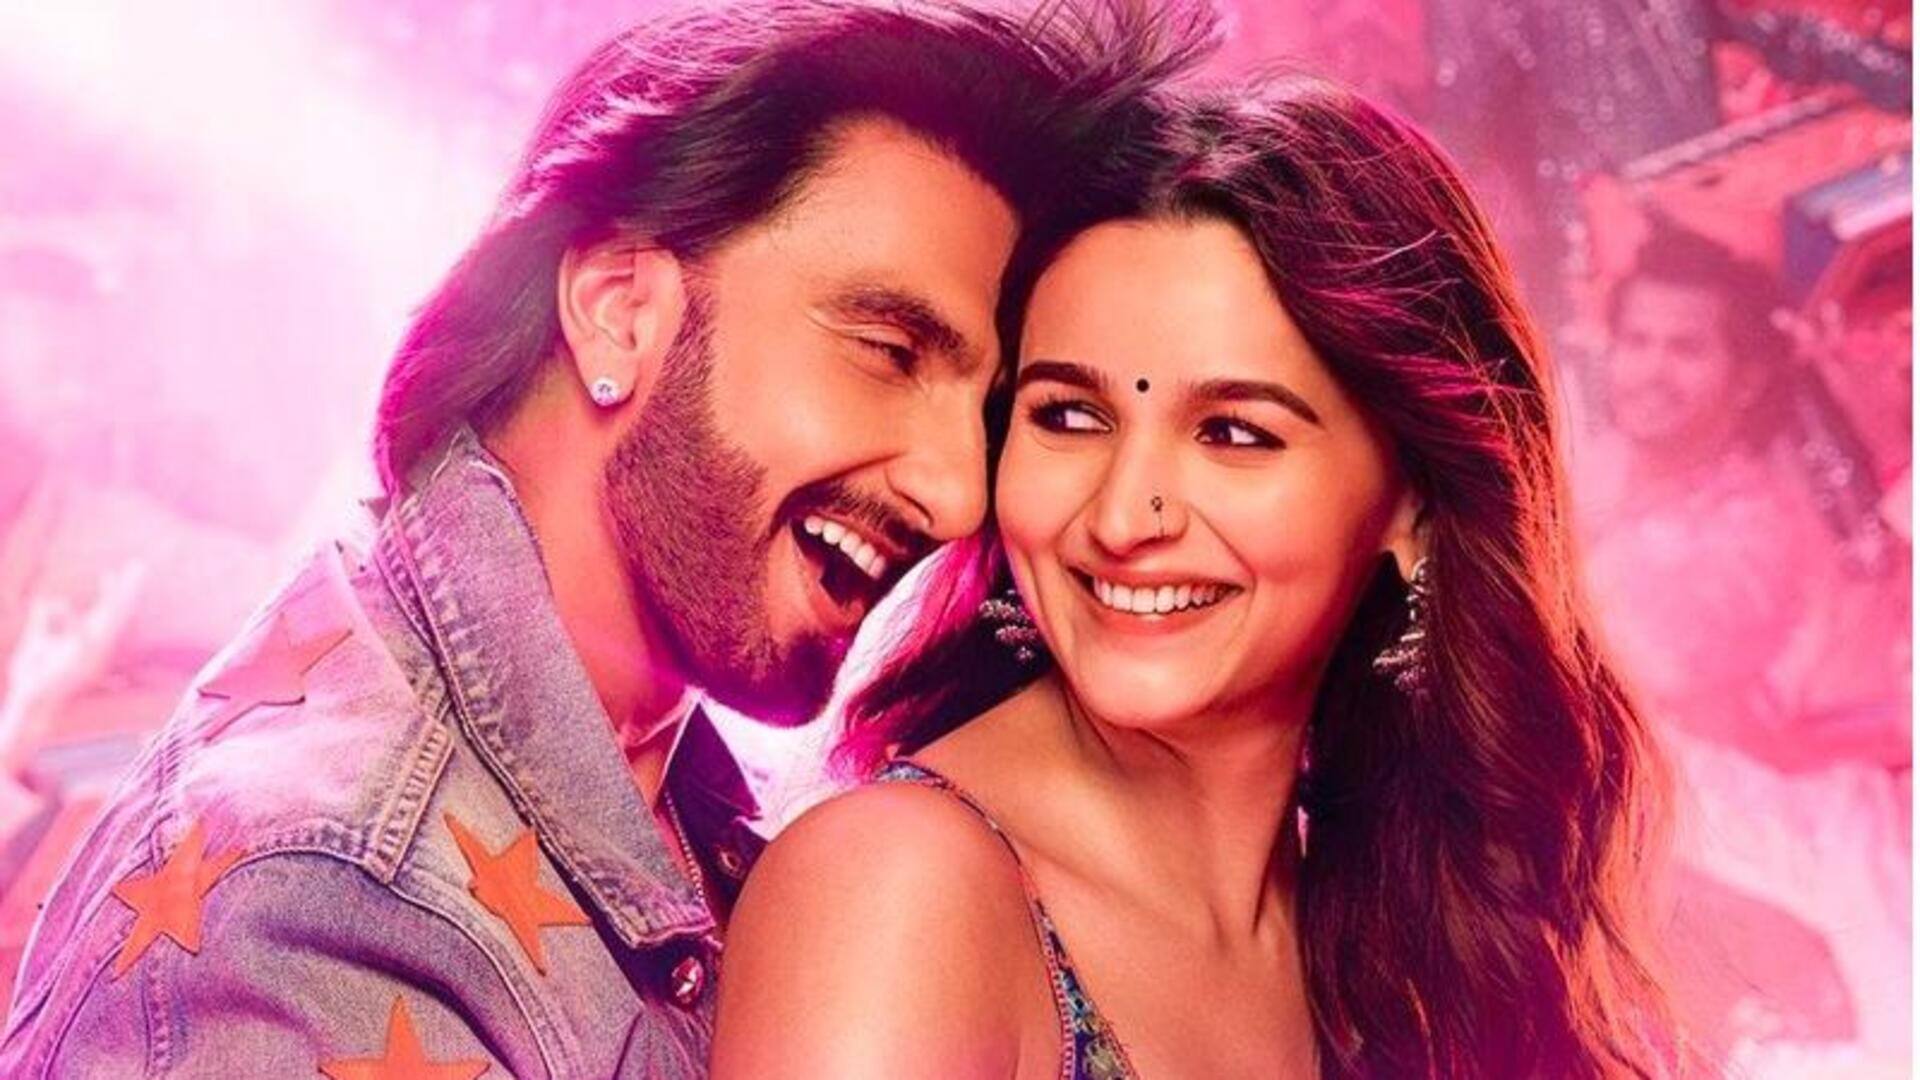 करण जौहर की फिल्म 'रॉकी और रानी की प्रेम कहानी' का टीजर इस दिन होगा रिलीज 